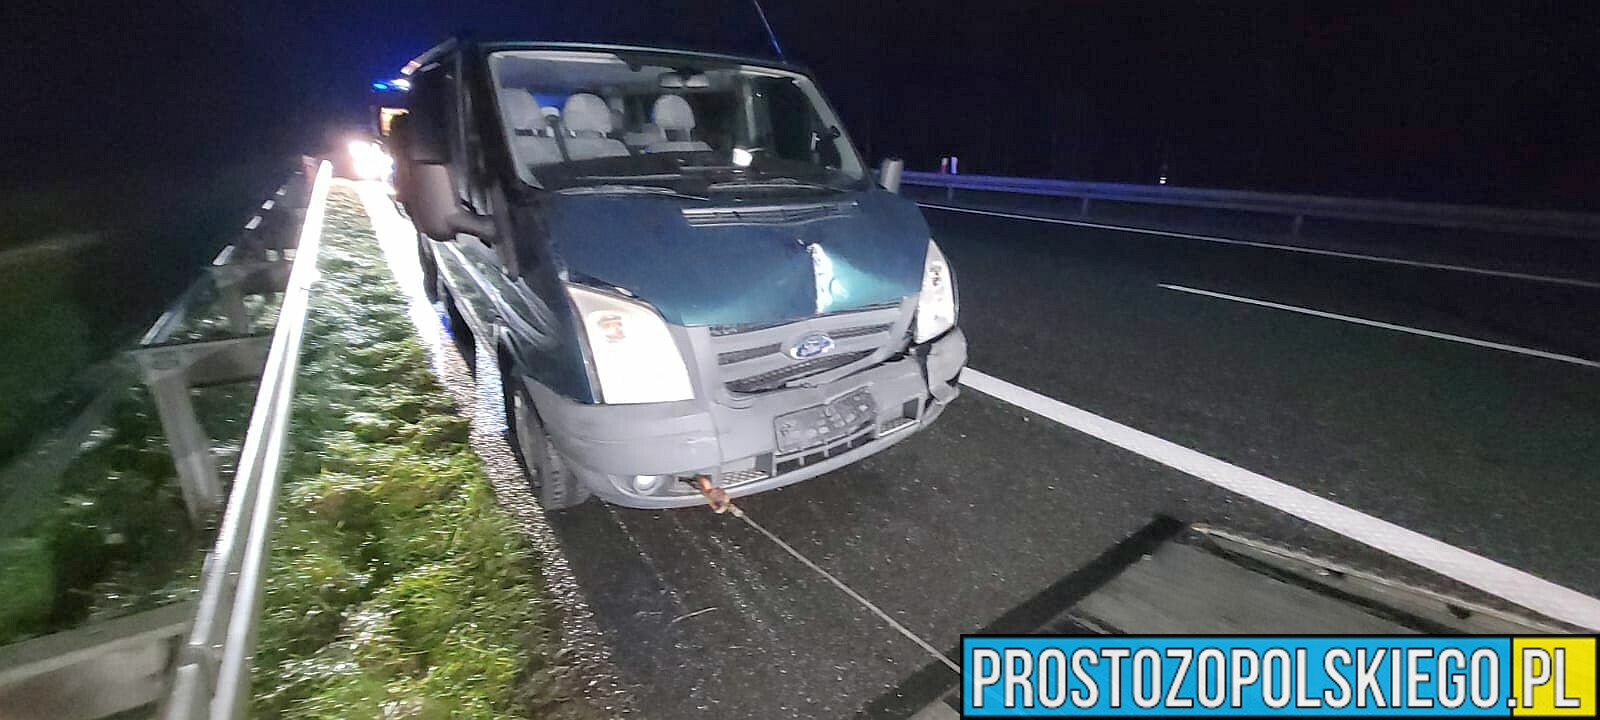 Wypadek na autostradzie A4.Bus Służby Celno-Skarbowej uderzył w lawetę.(Zdjęcia)